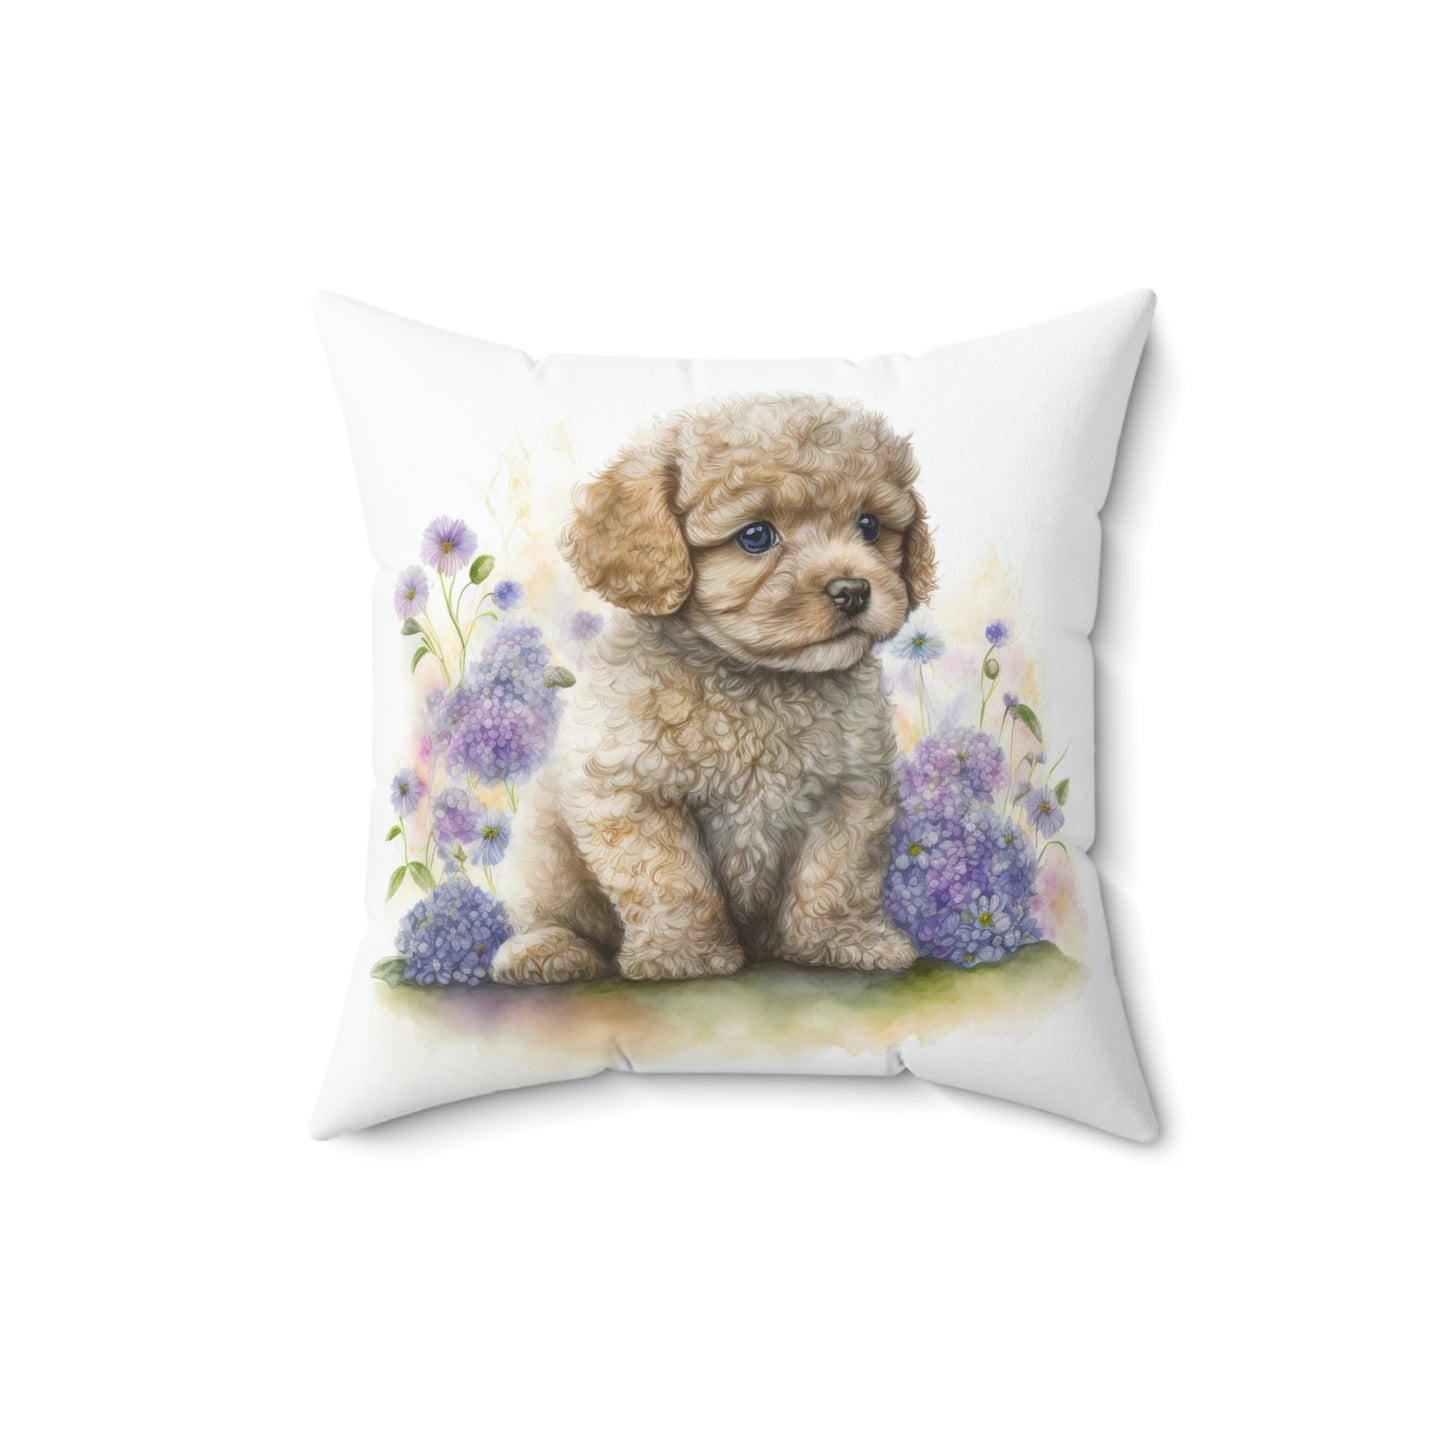 doodle pillow, doodle throw pillow, doodle pet pillow, doodle puppy pillow, dog lover gift pillow